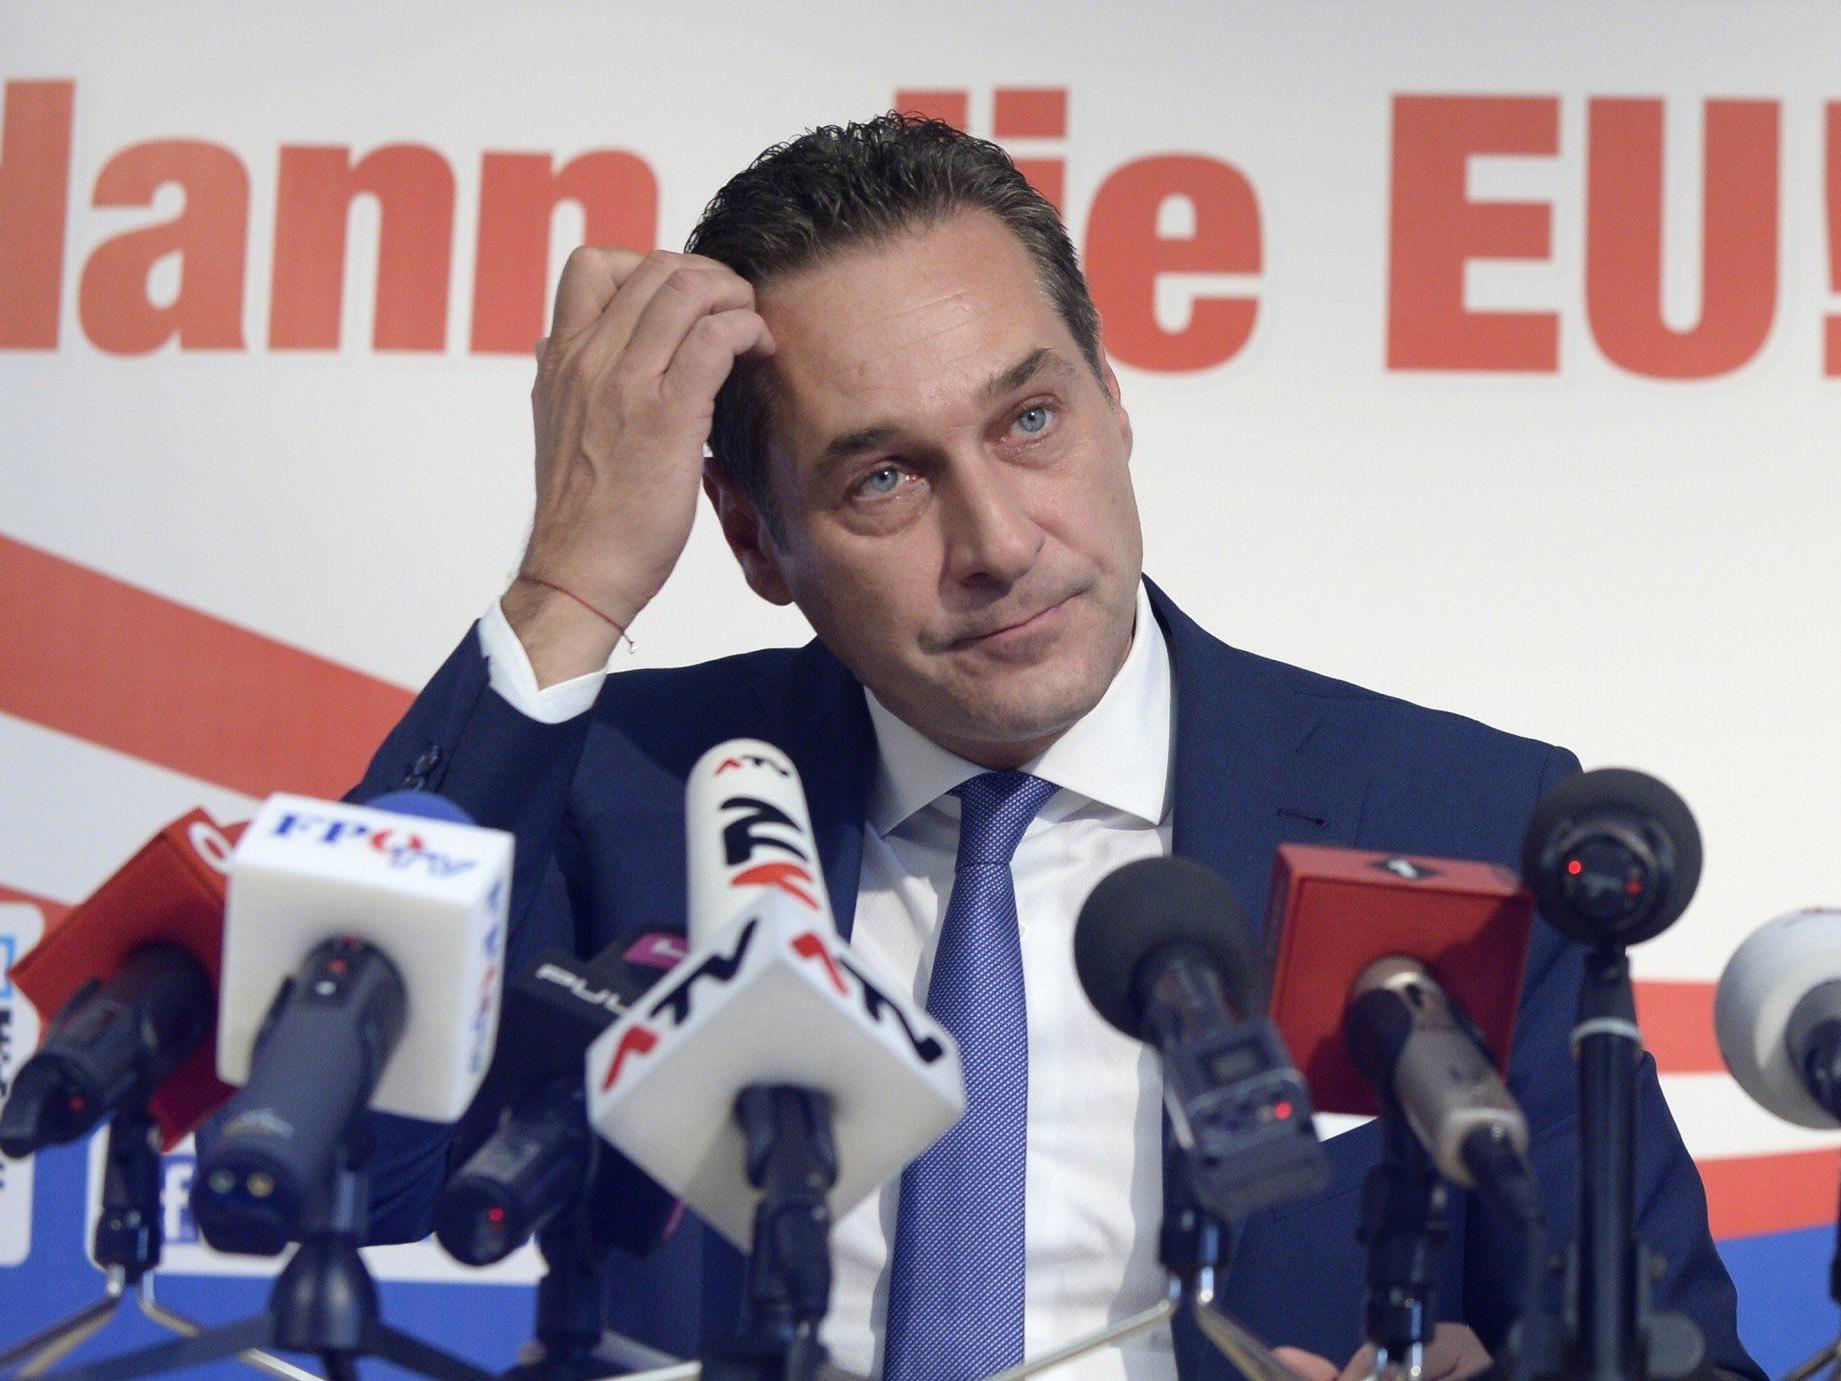 EU-Wahl: FPÖ wirbt mit Strache gegen Dummheit